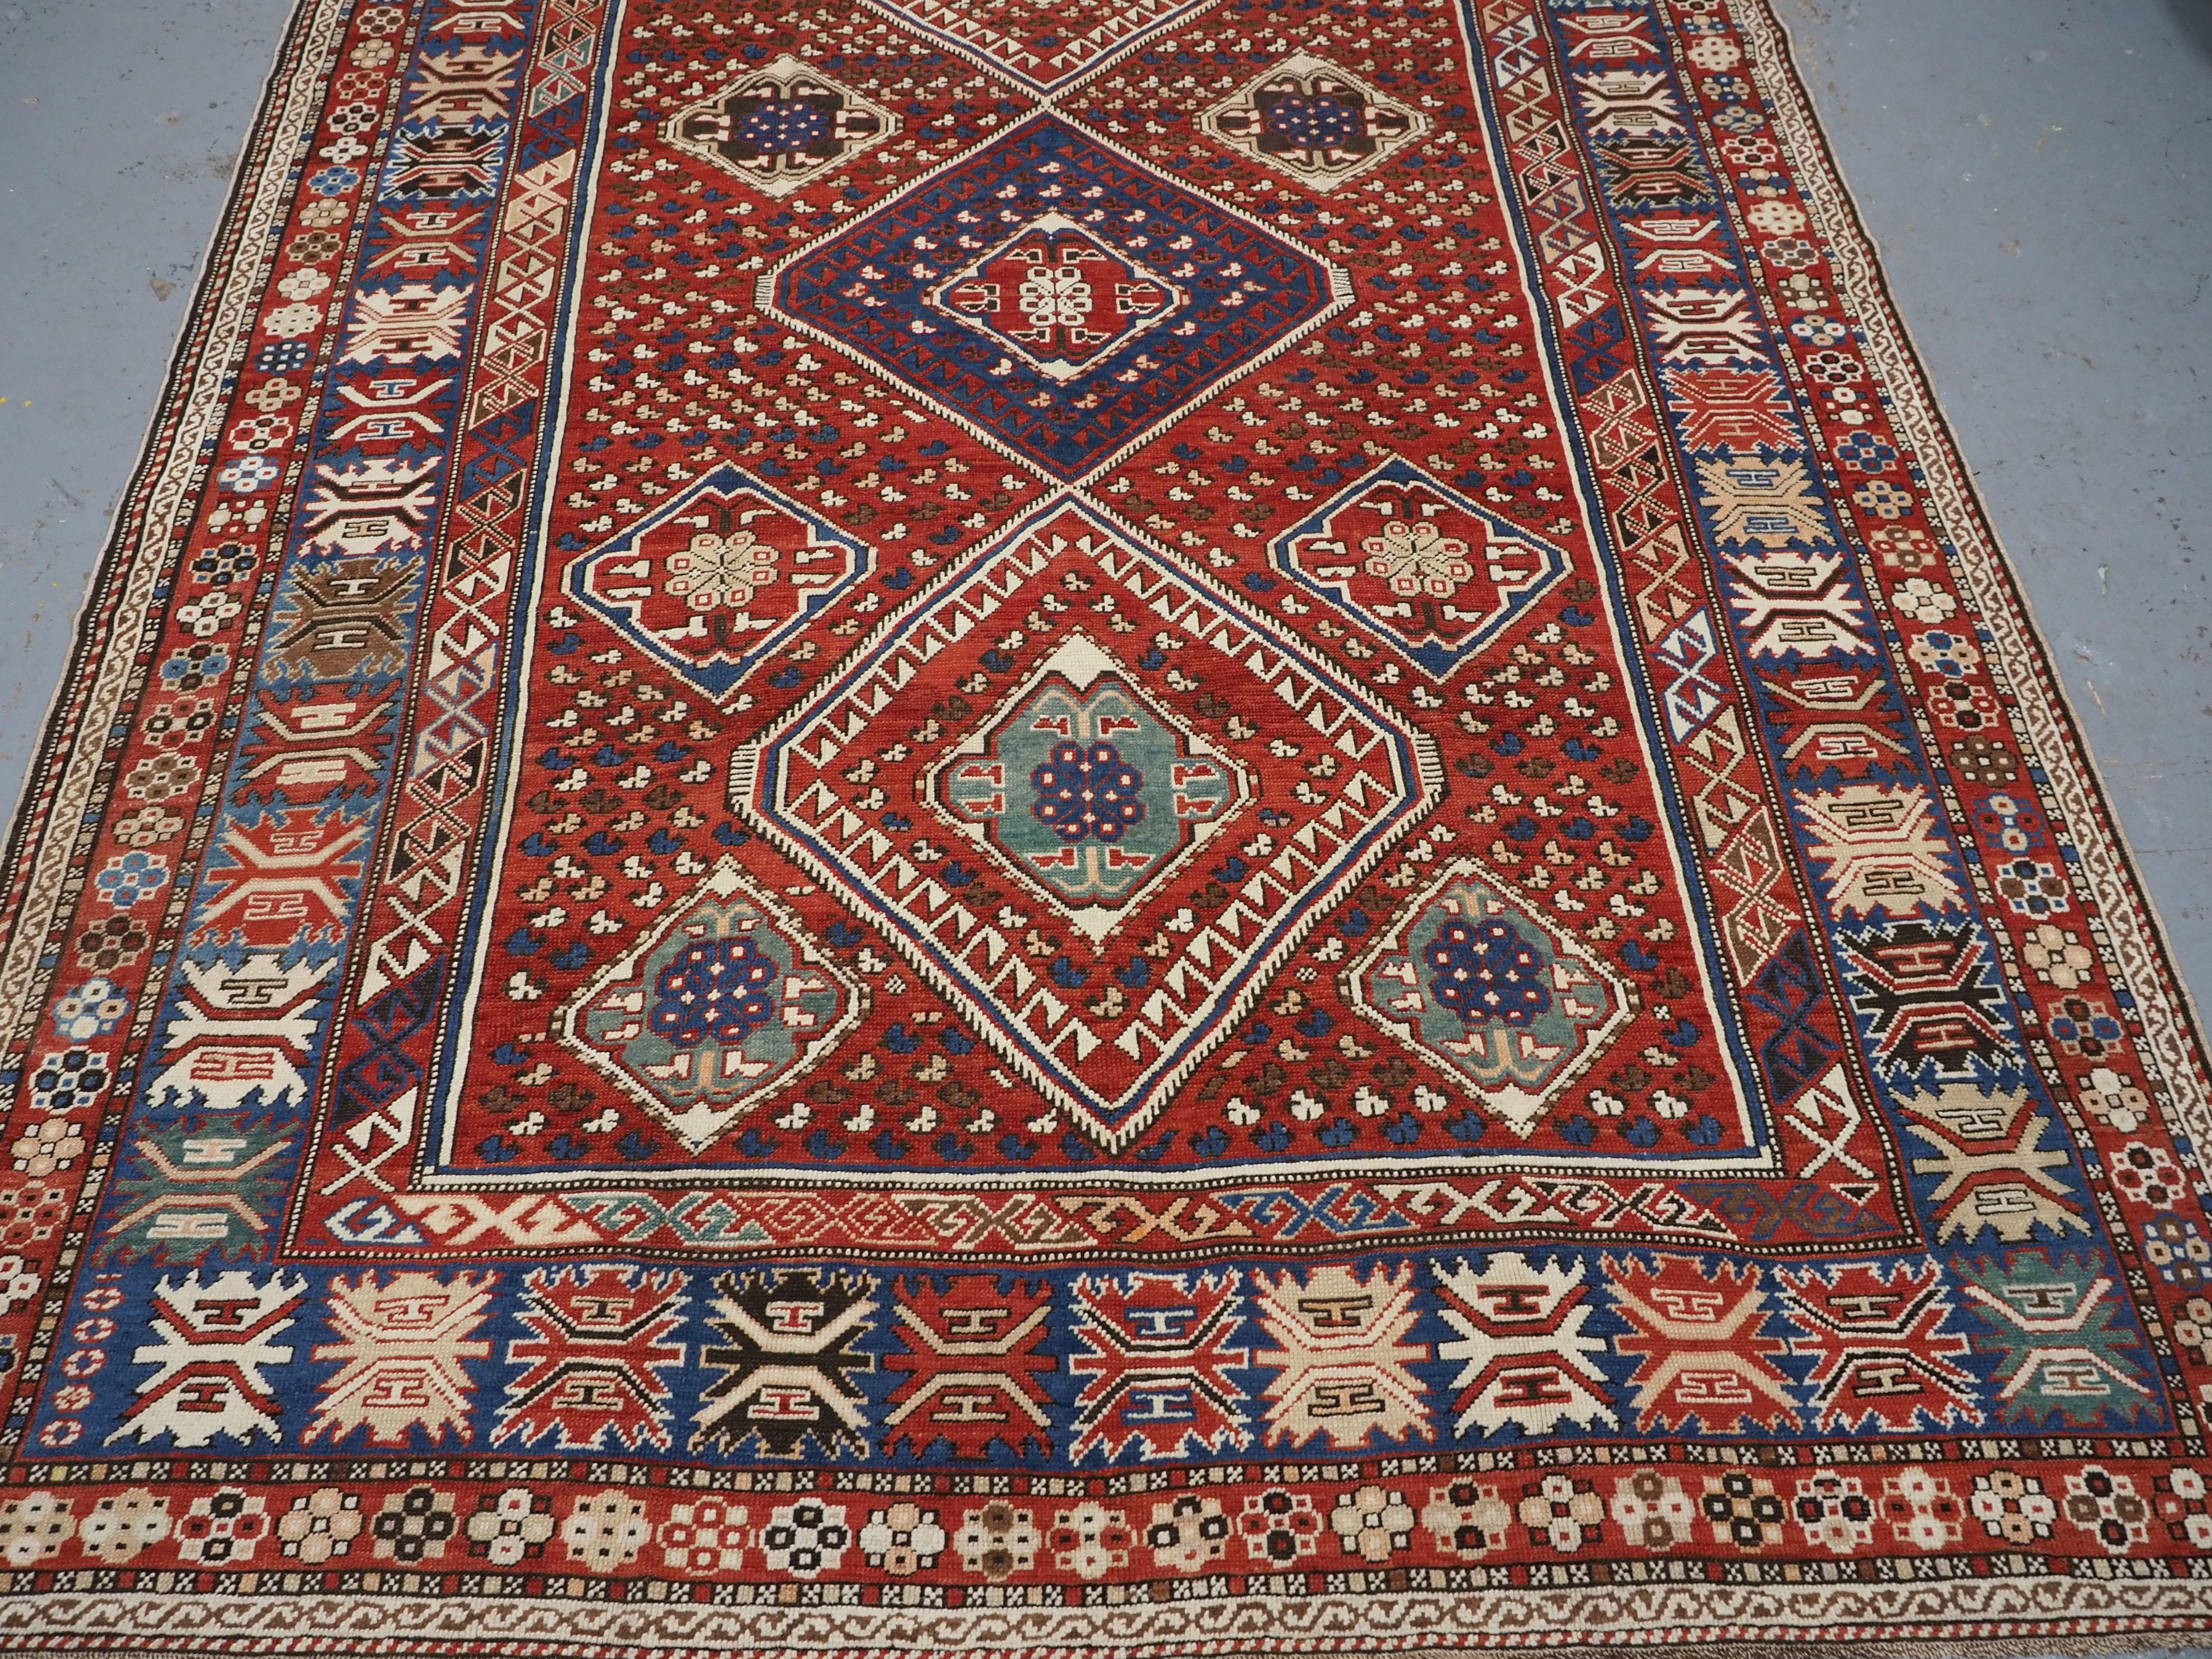 Late 19th Century Antique Caucasian Khila rug,  Baku region of the Eastern Caucasus.  Circa 1890. For Sale